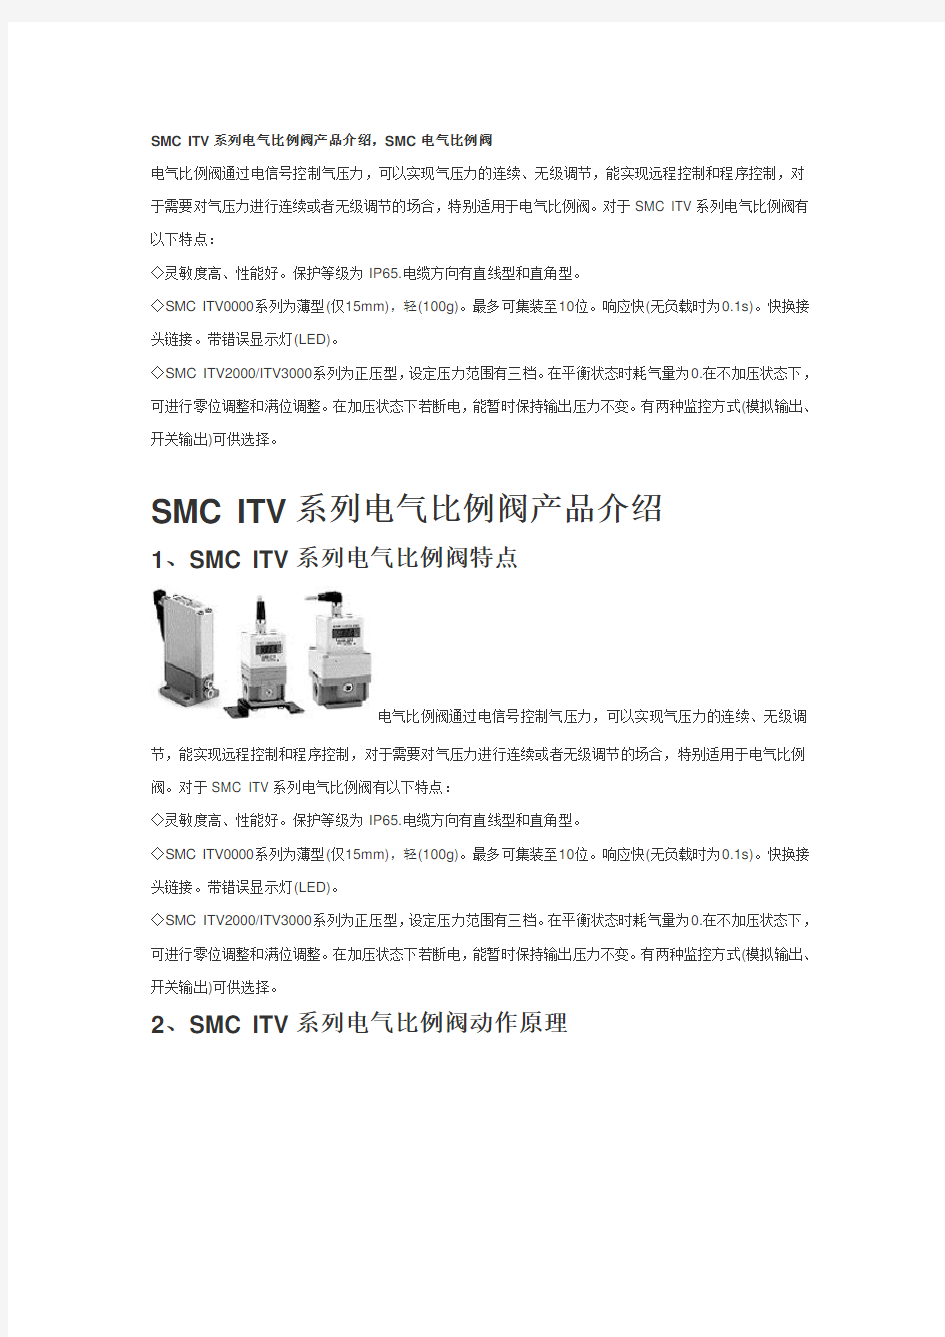 SMC ITV系列电气比例阀产品介绍